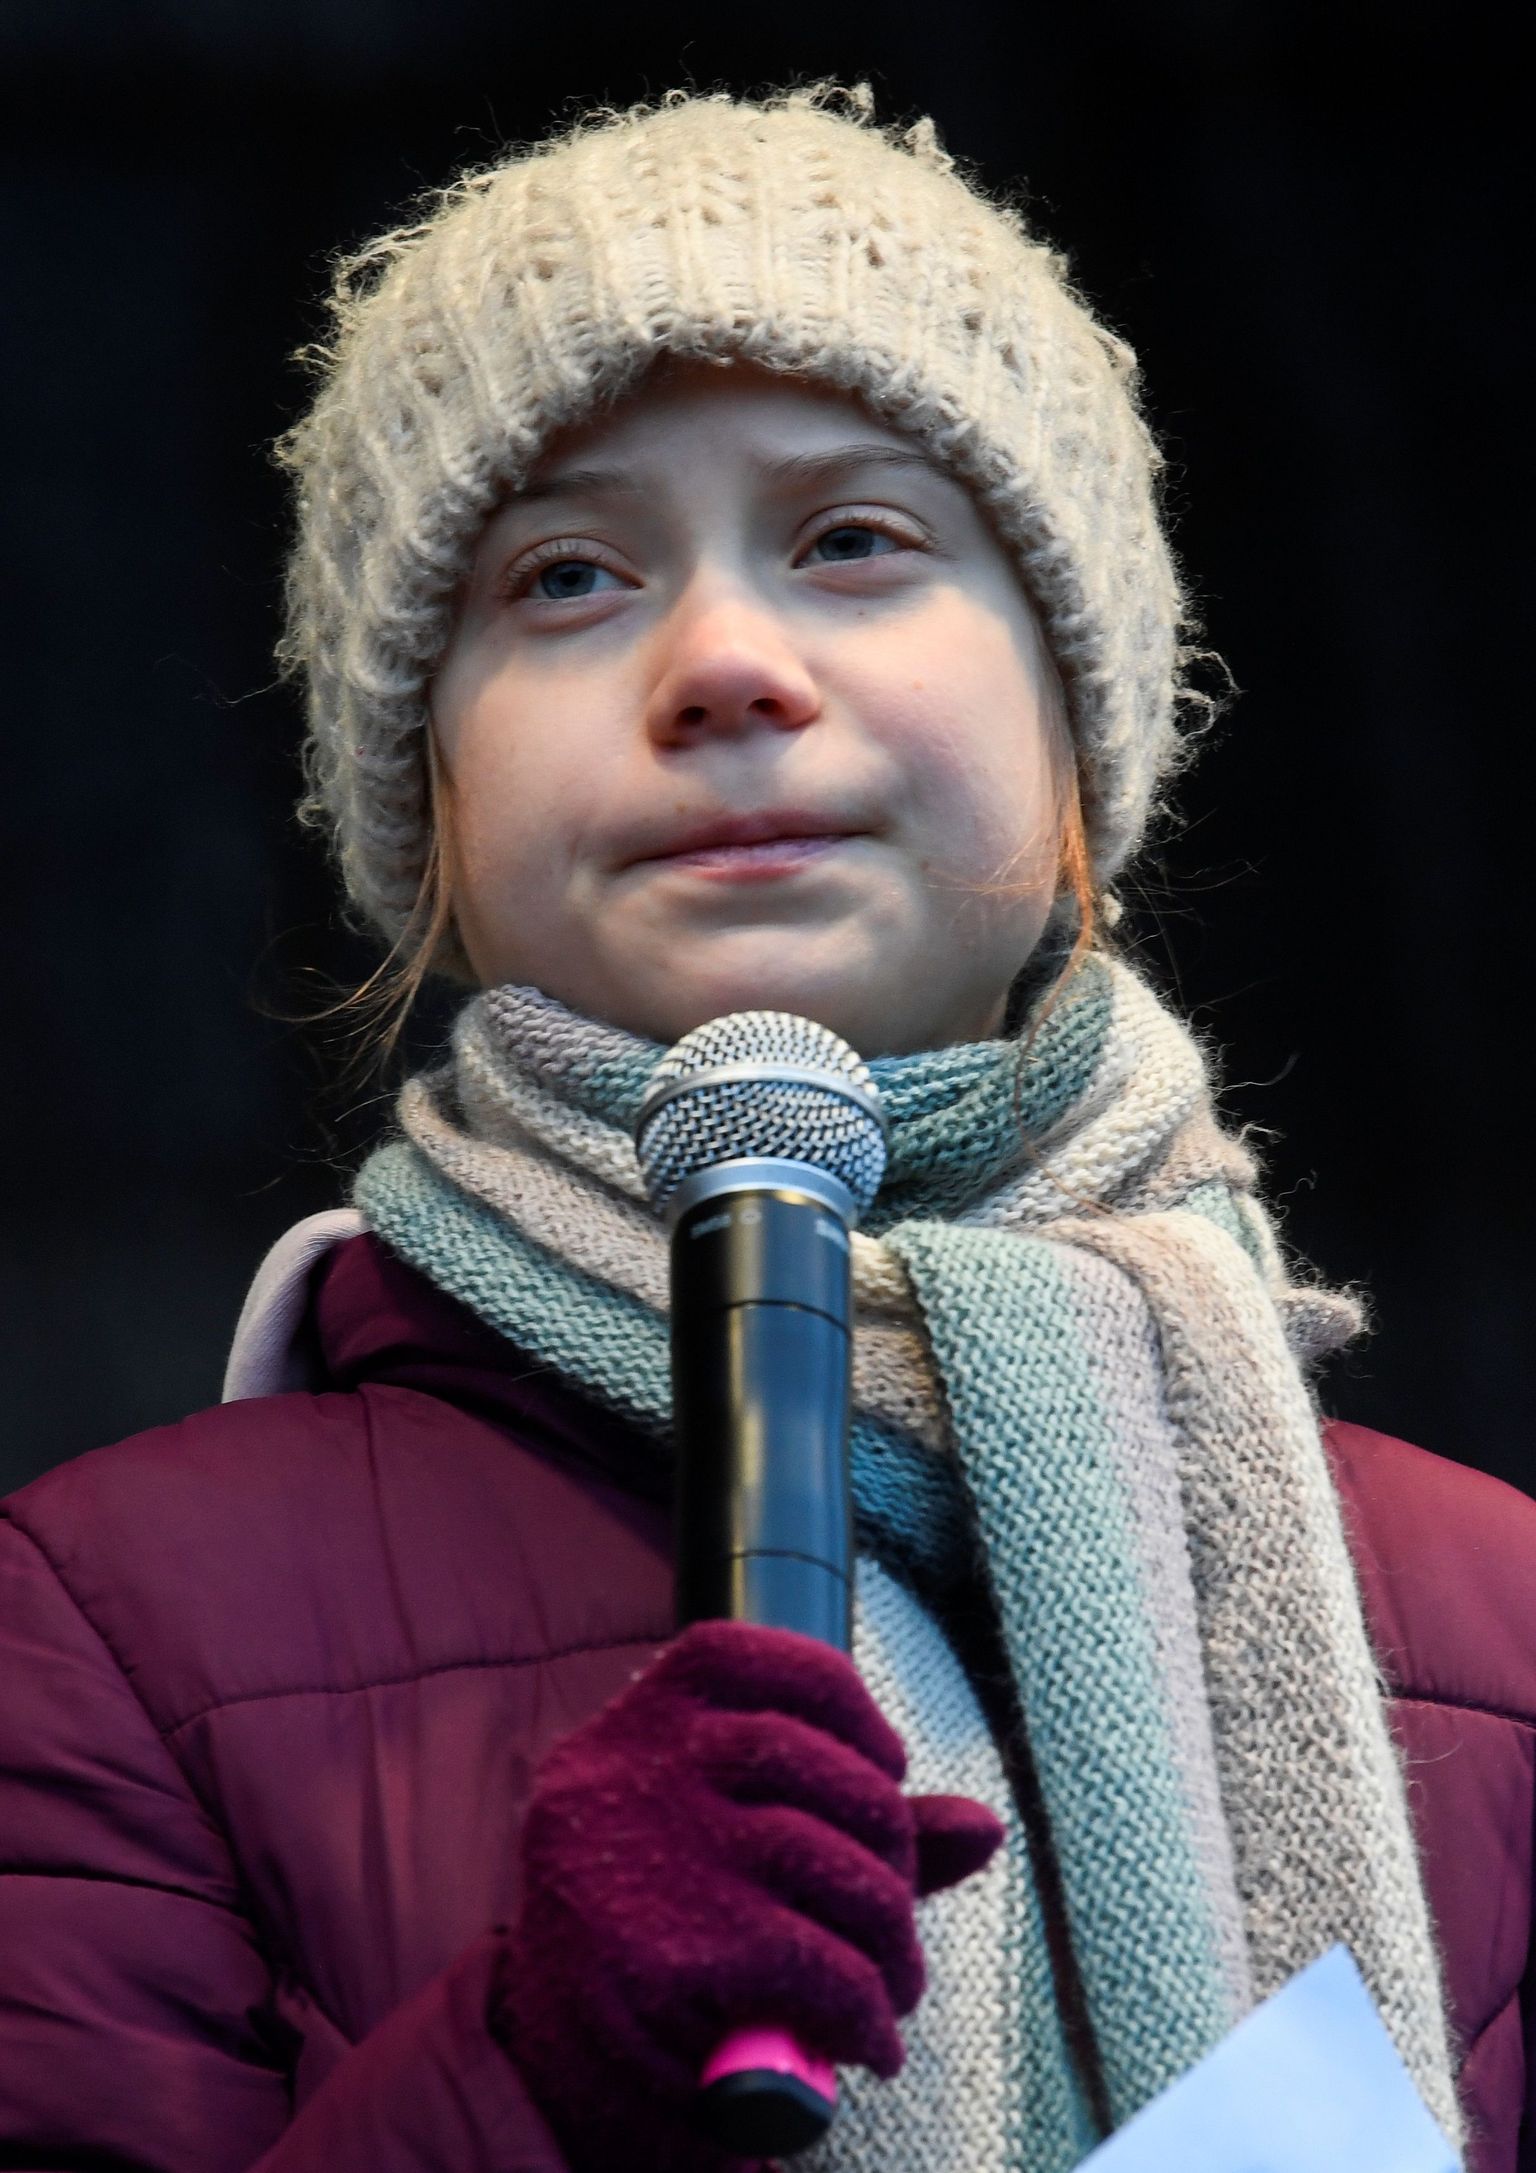 Kliimaaktivist Greta Thunberg 21. veebruaril 2020 Saksamaal Hamburgis kliimastreigil